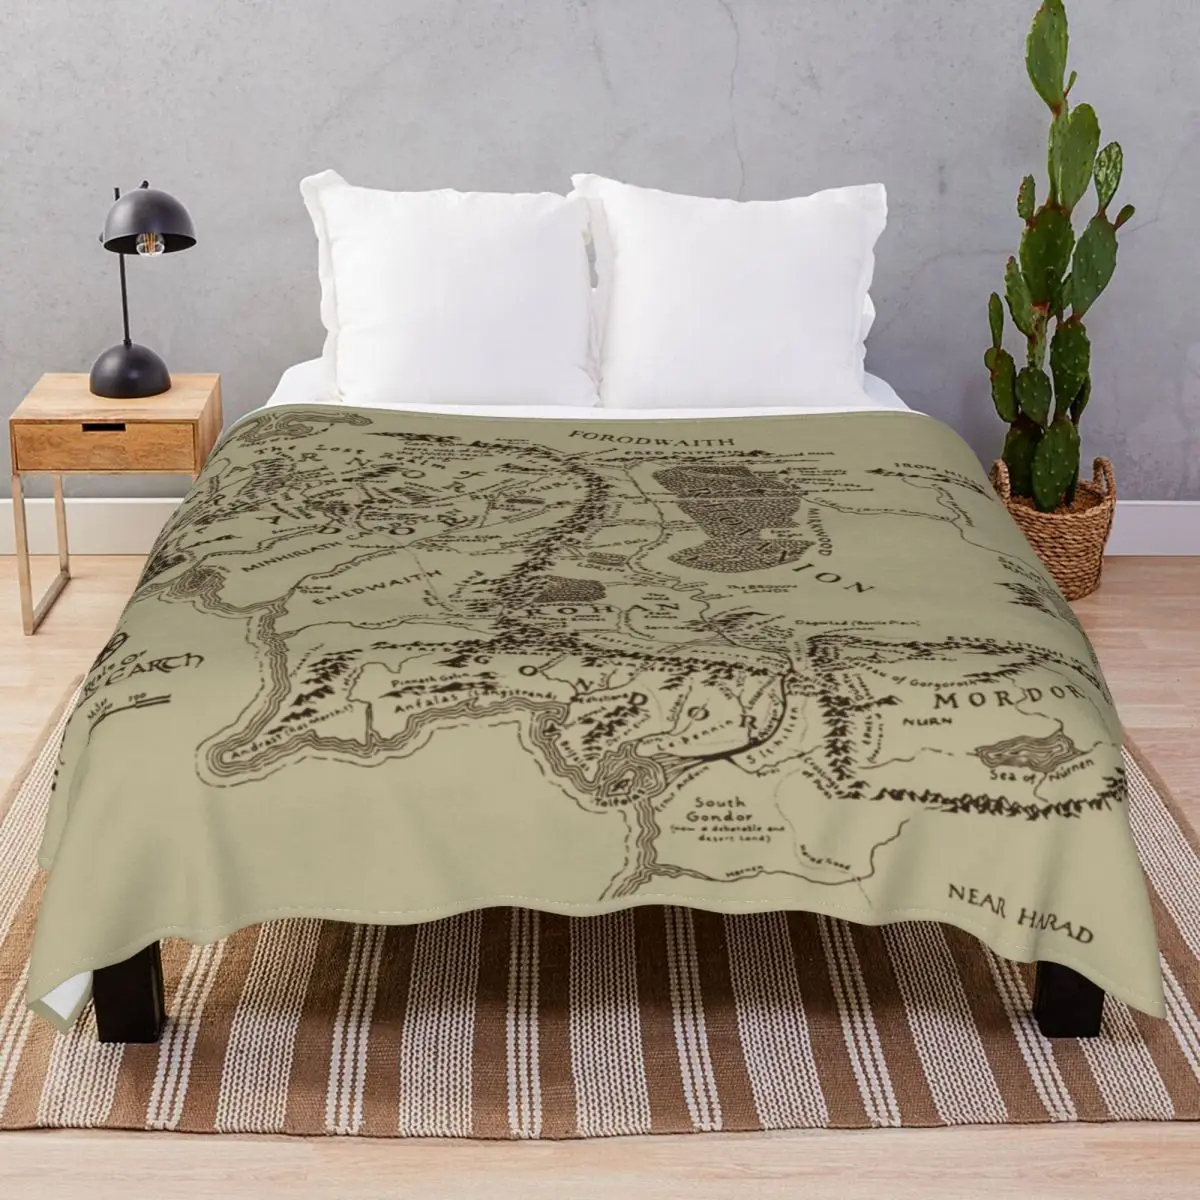 

Карта одеяла фланелевые, Текстильный декор, легкий тонкий плед, одеяло для постельного белья, дивана, лагеря, офиса